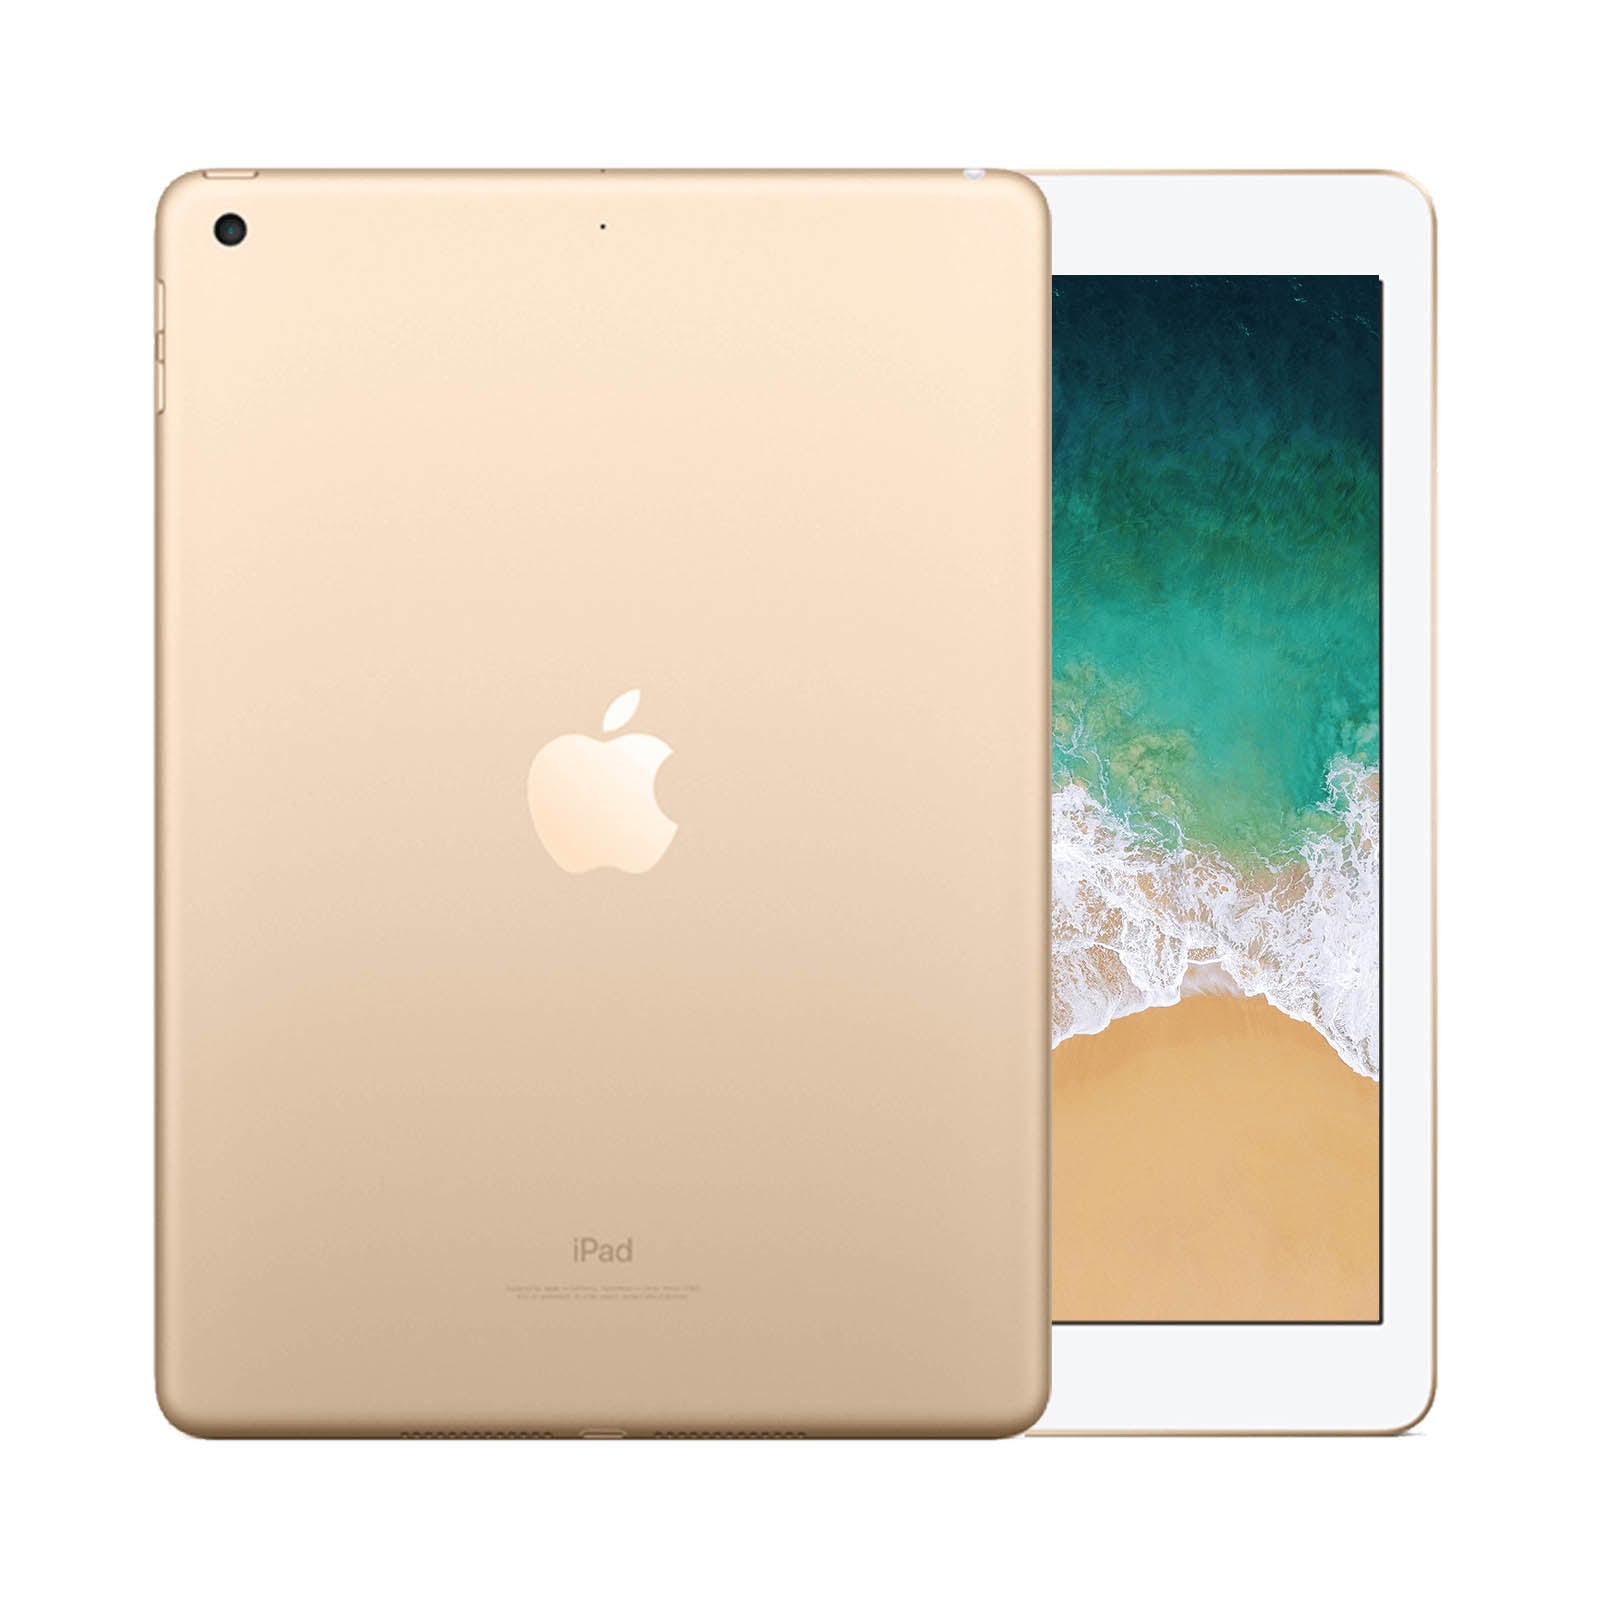 Apple iPad 5 128GB WiFi Gold - Good 128GB Gold Good